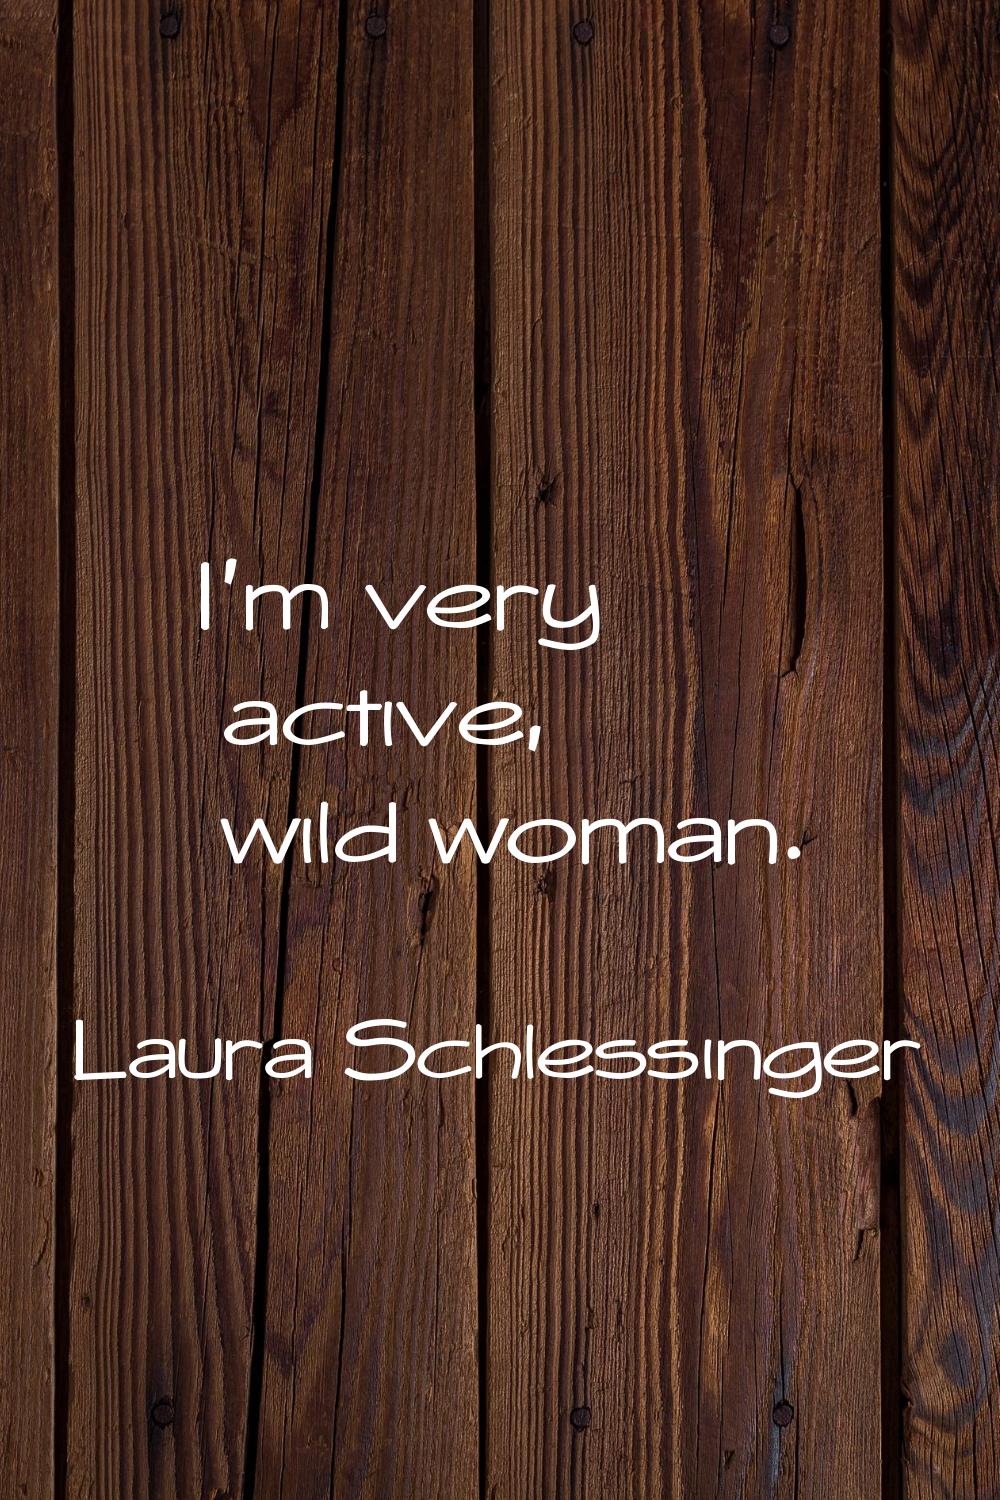 I'm very active, wild woman.